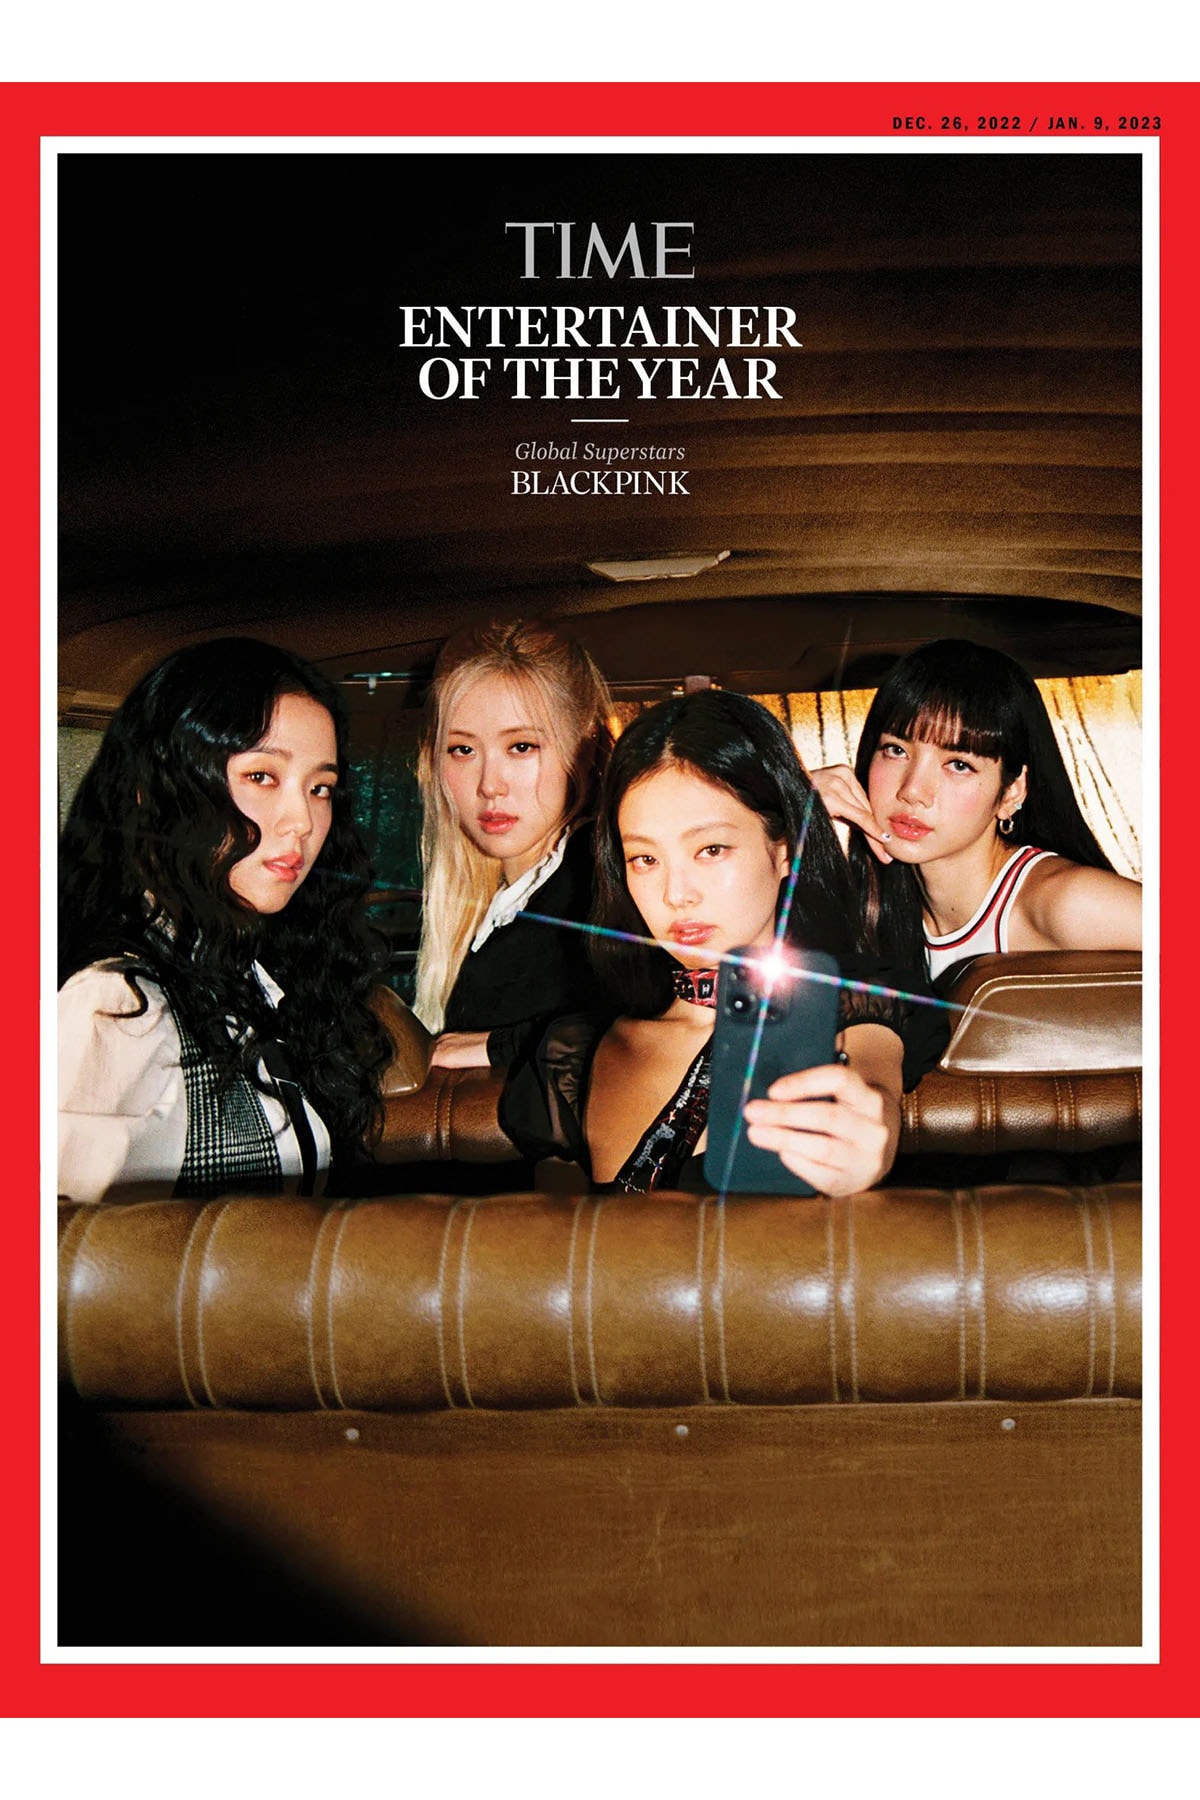 BLACKPINK 全員合體以 2022 年度藝人之姿登《TIME》雜誌封面